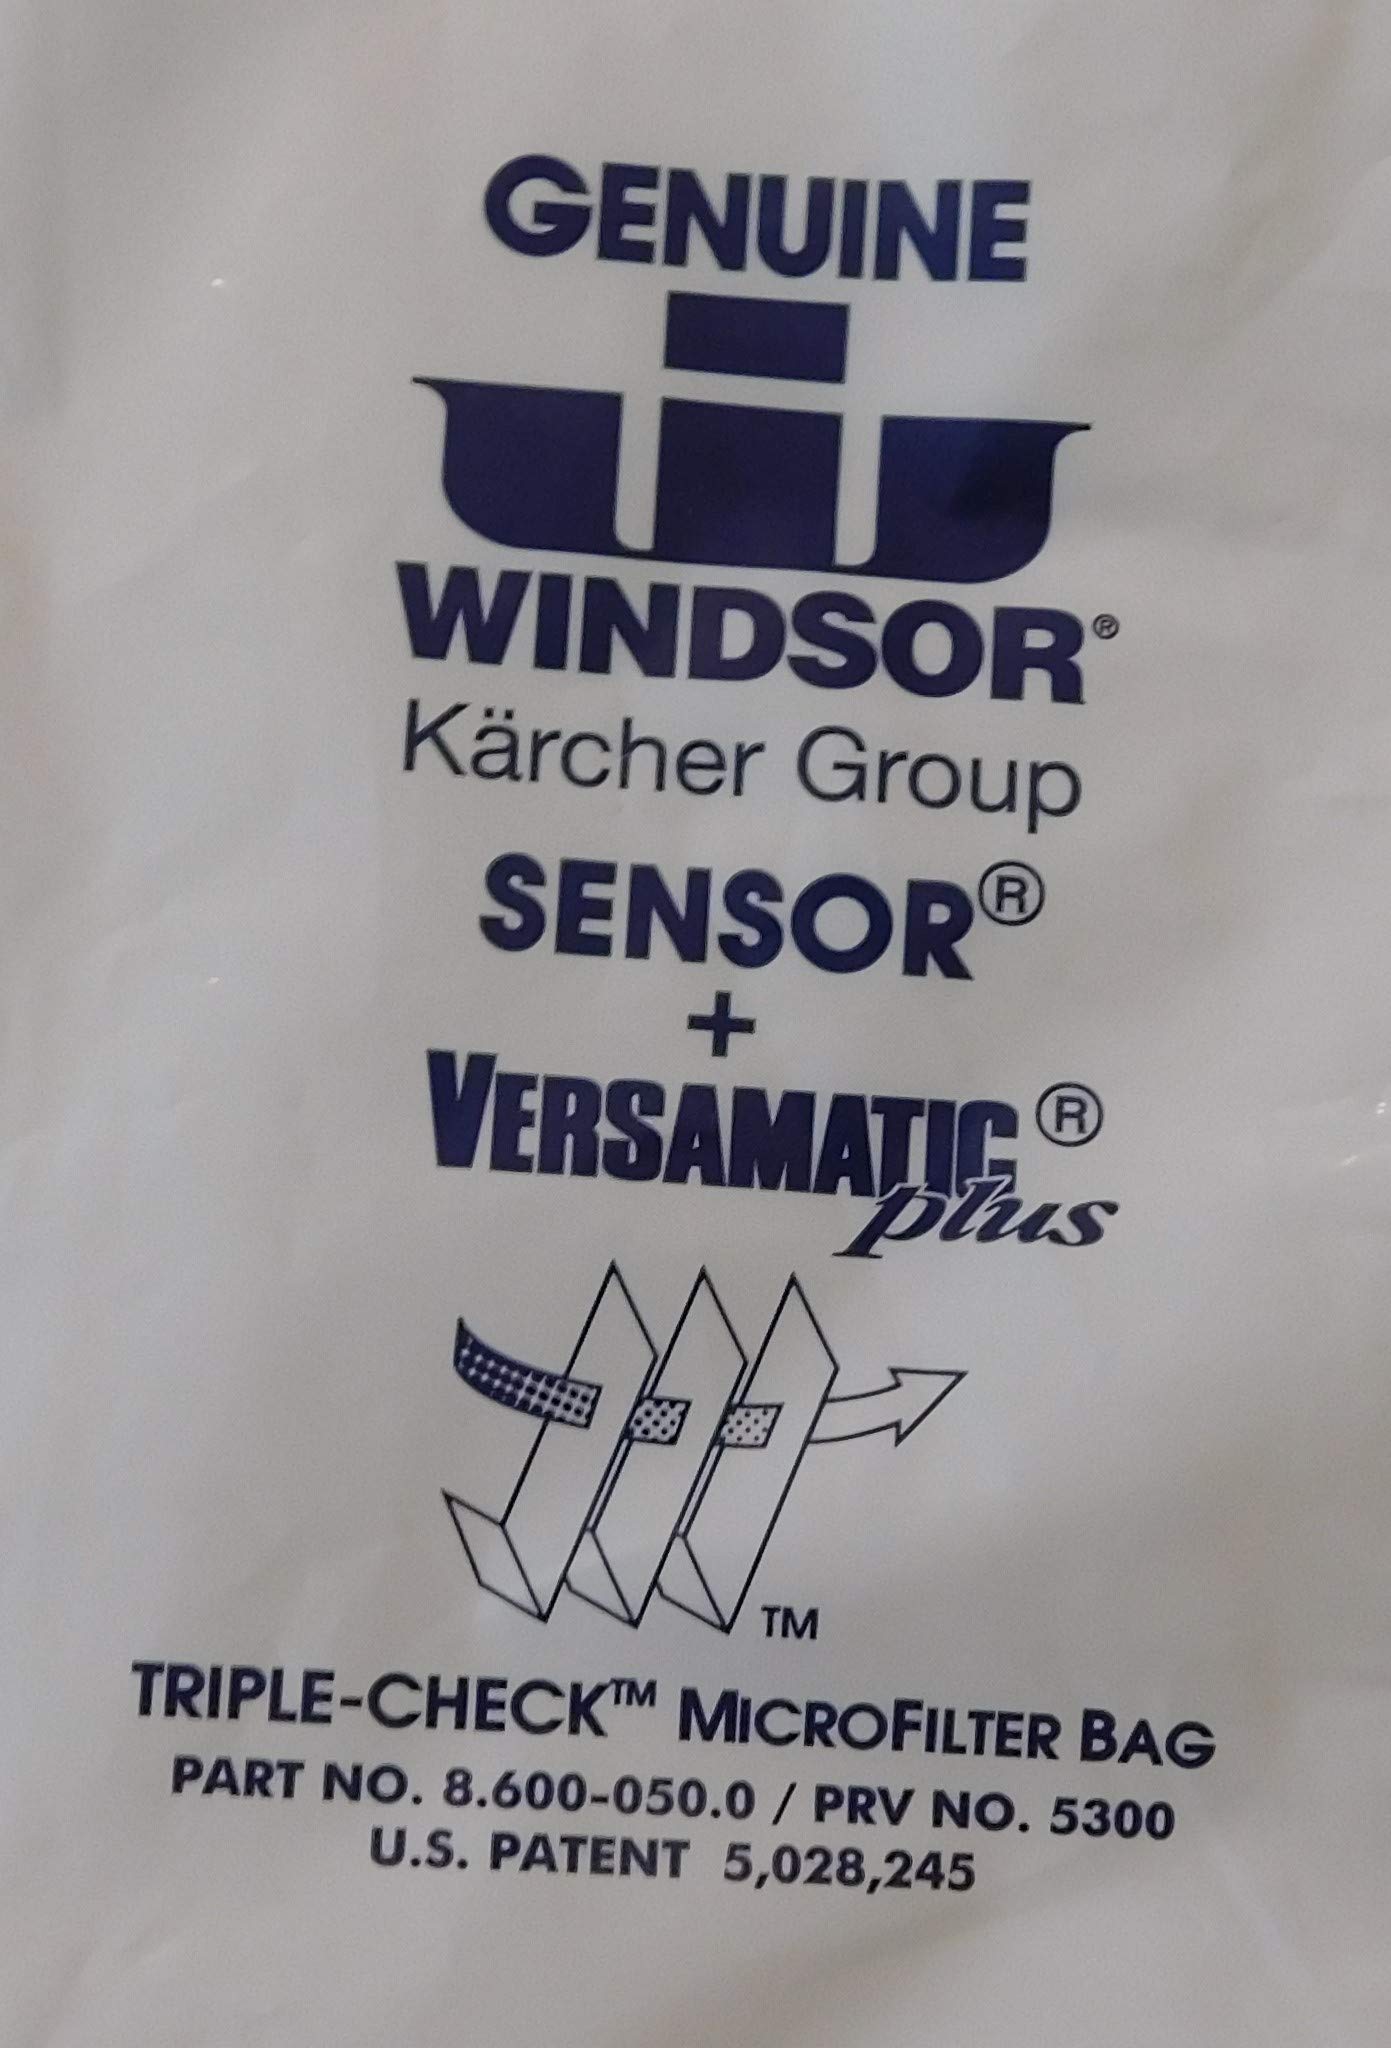 Genuine Windsor Triple Check Microfilter Bag 5300 - Sensor and Versamatic Plus - 1 Pack (10 Bags)